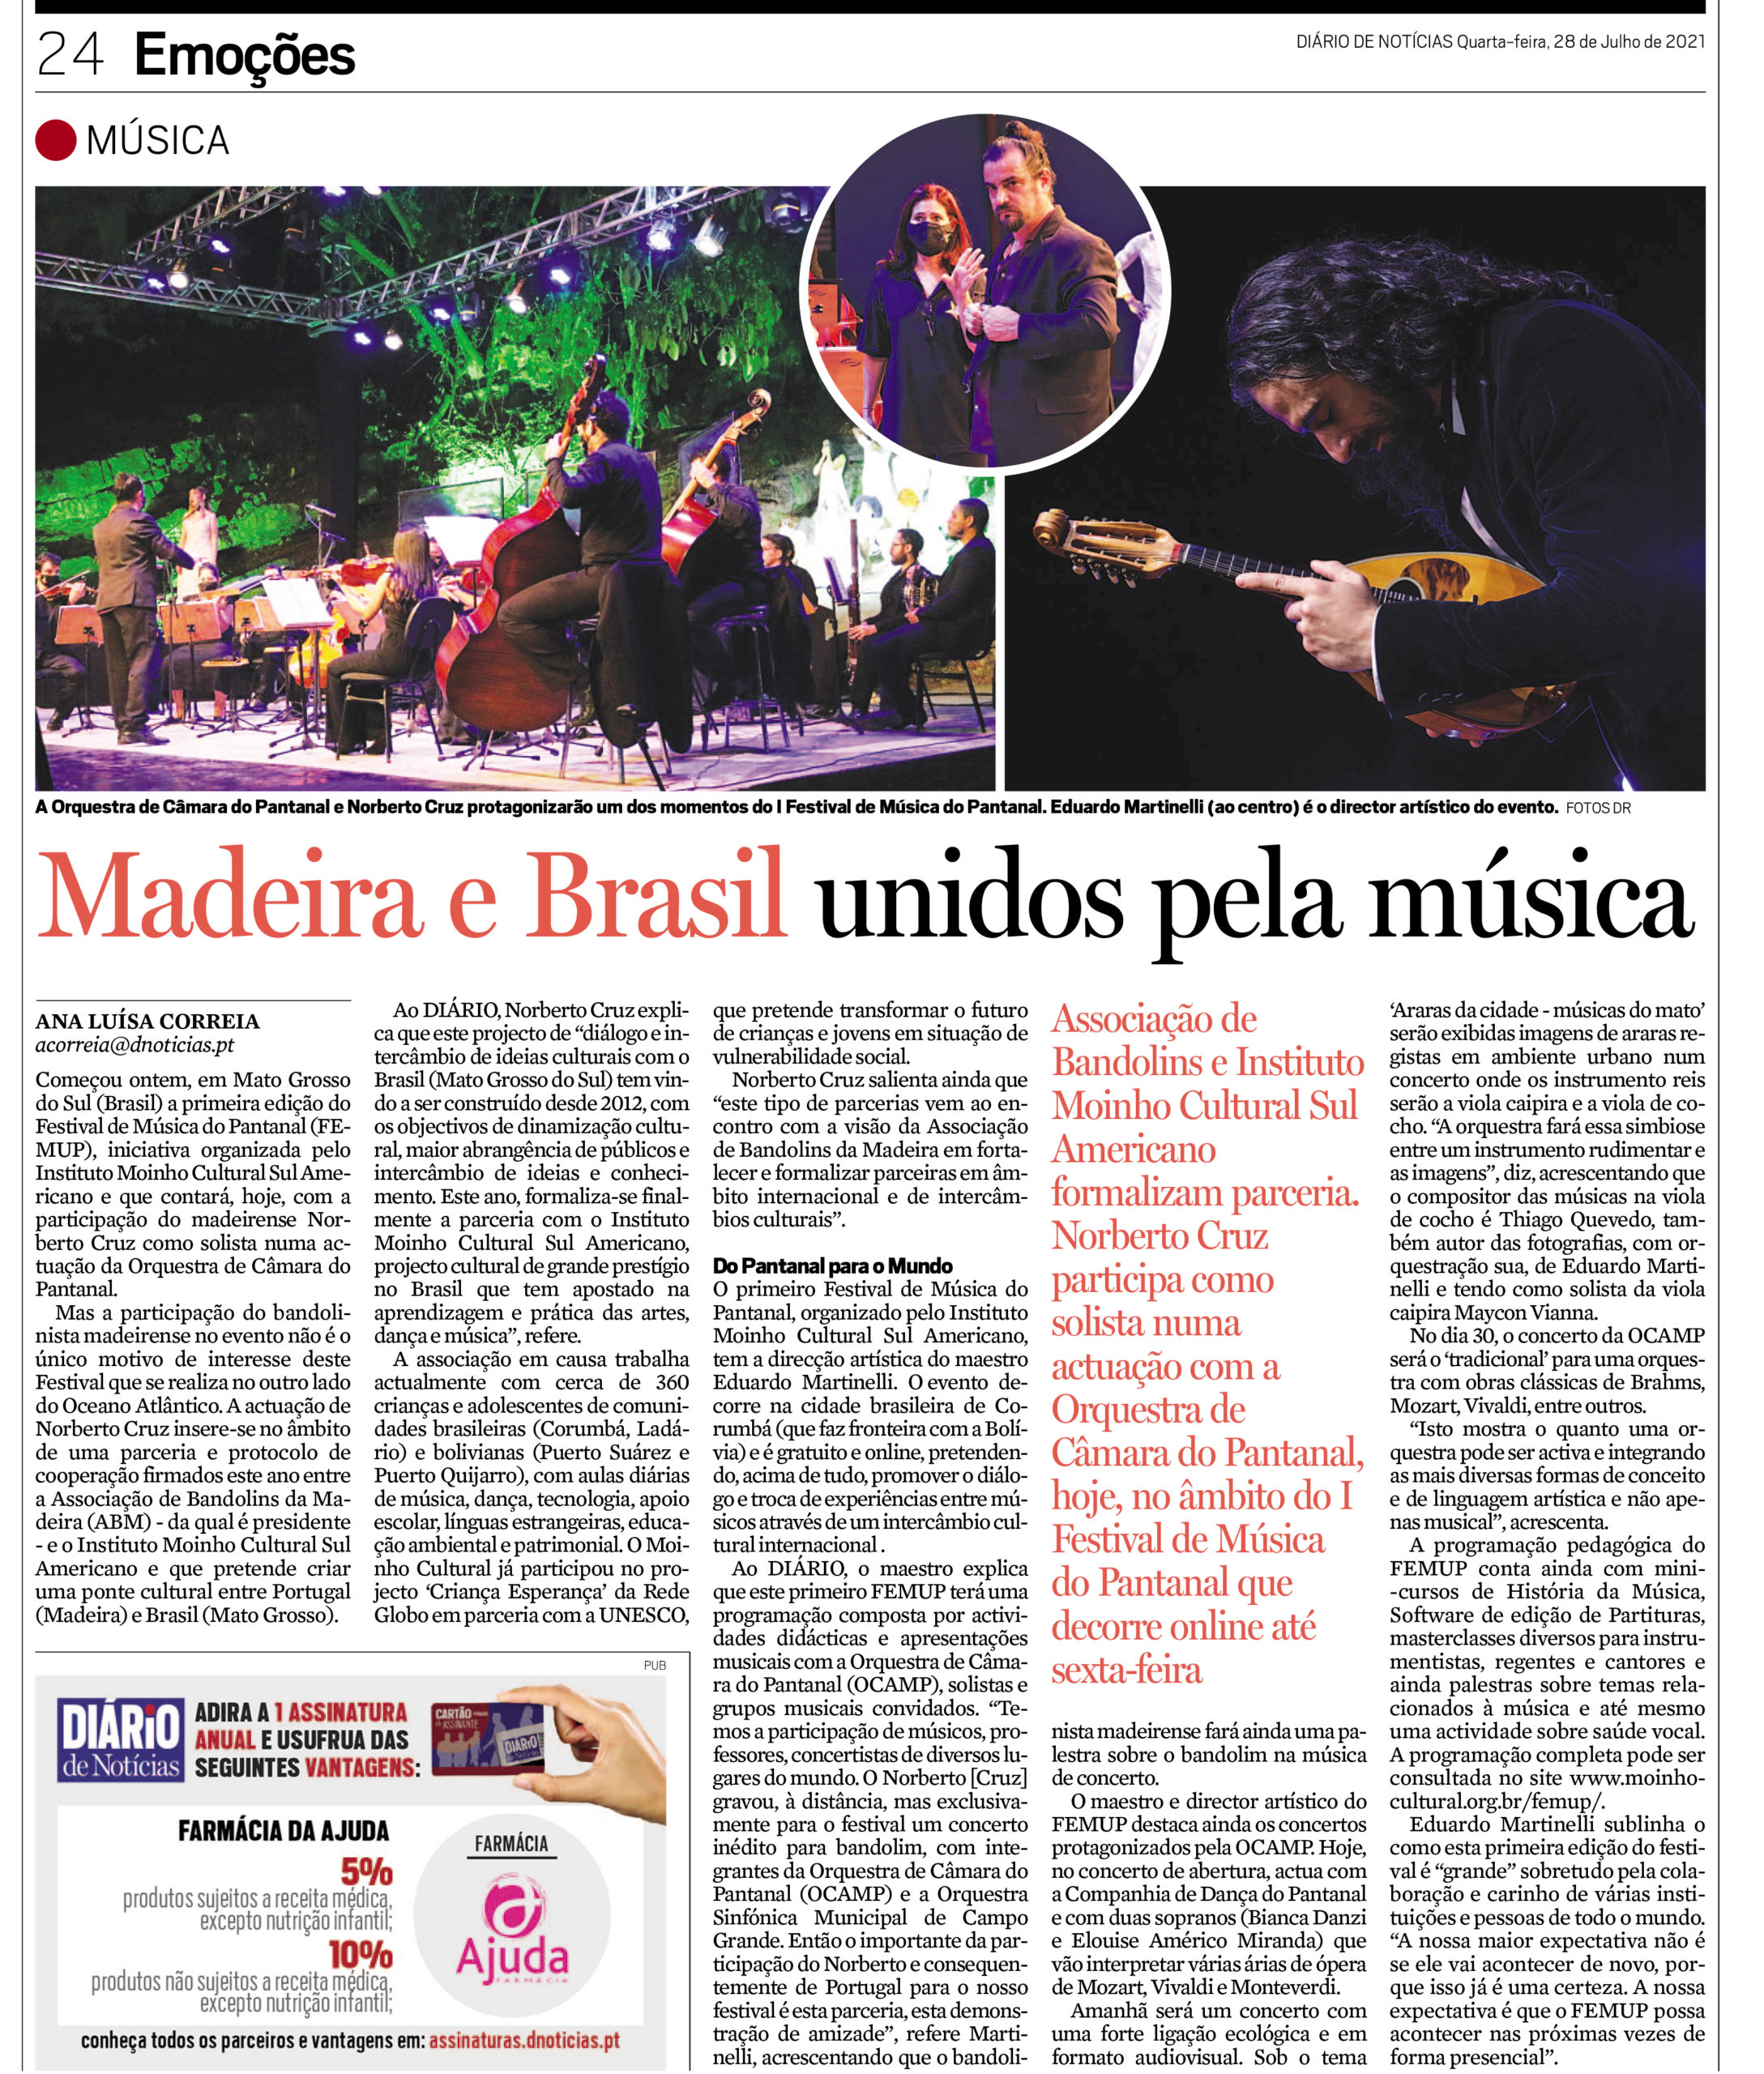 Madeira e Brasil unidos pela música